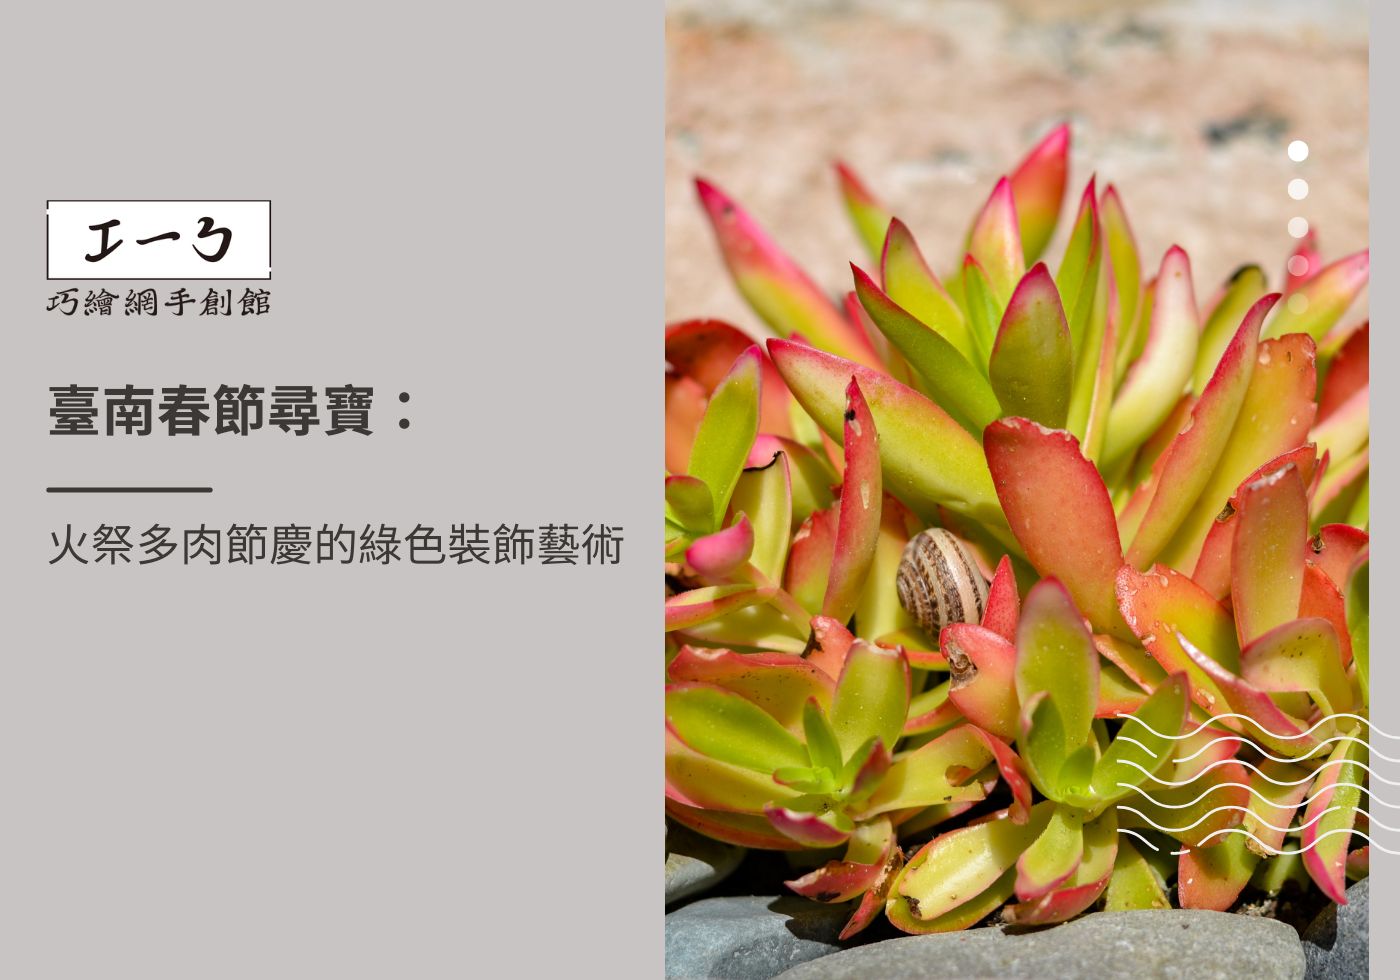 閱讀更多文章 臺南春節尋寶：火祭多肉節慶的綠色裝飾藝術